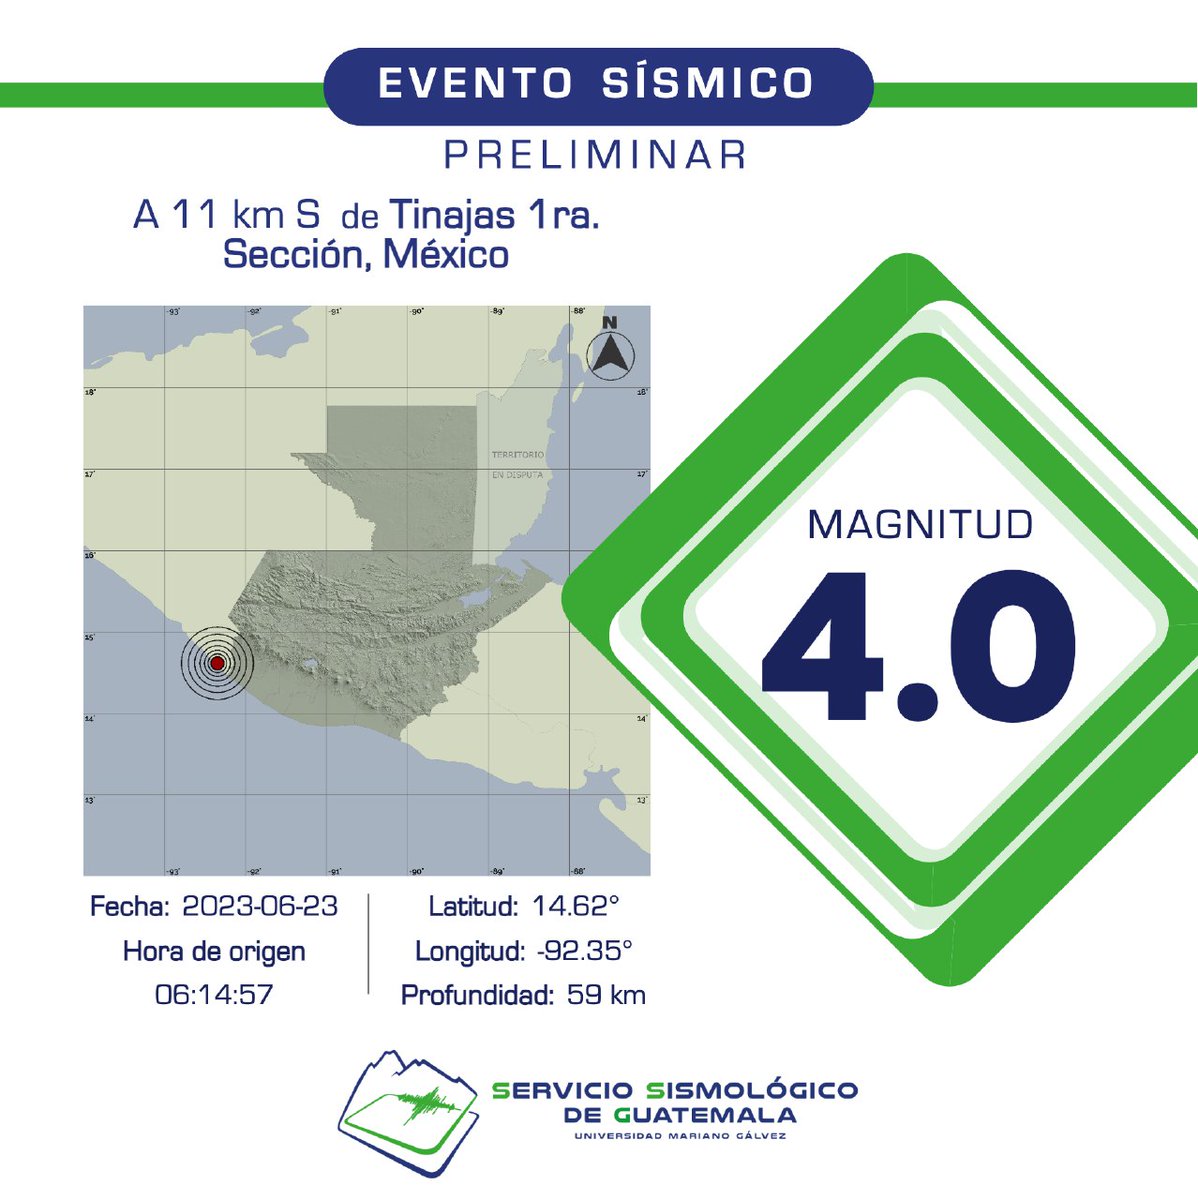 PRELIMINAR
Sismo registrado a 11 km S de Tinajas 1ra. Sección, México. #Temblor #TemblorGT #Sismo #SismoGT